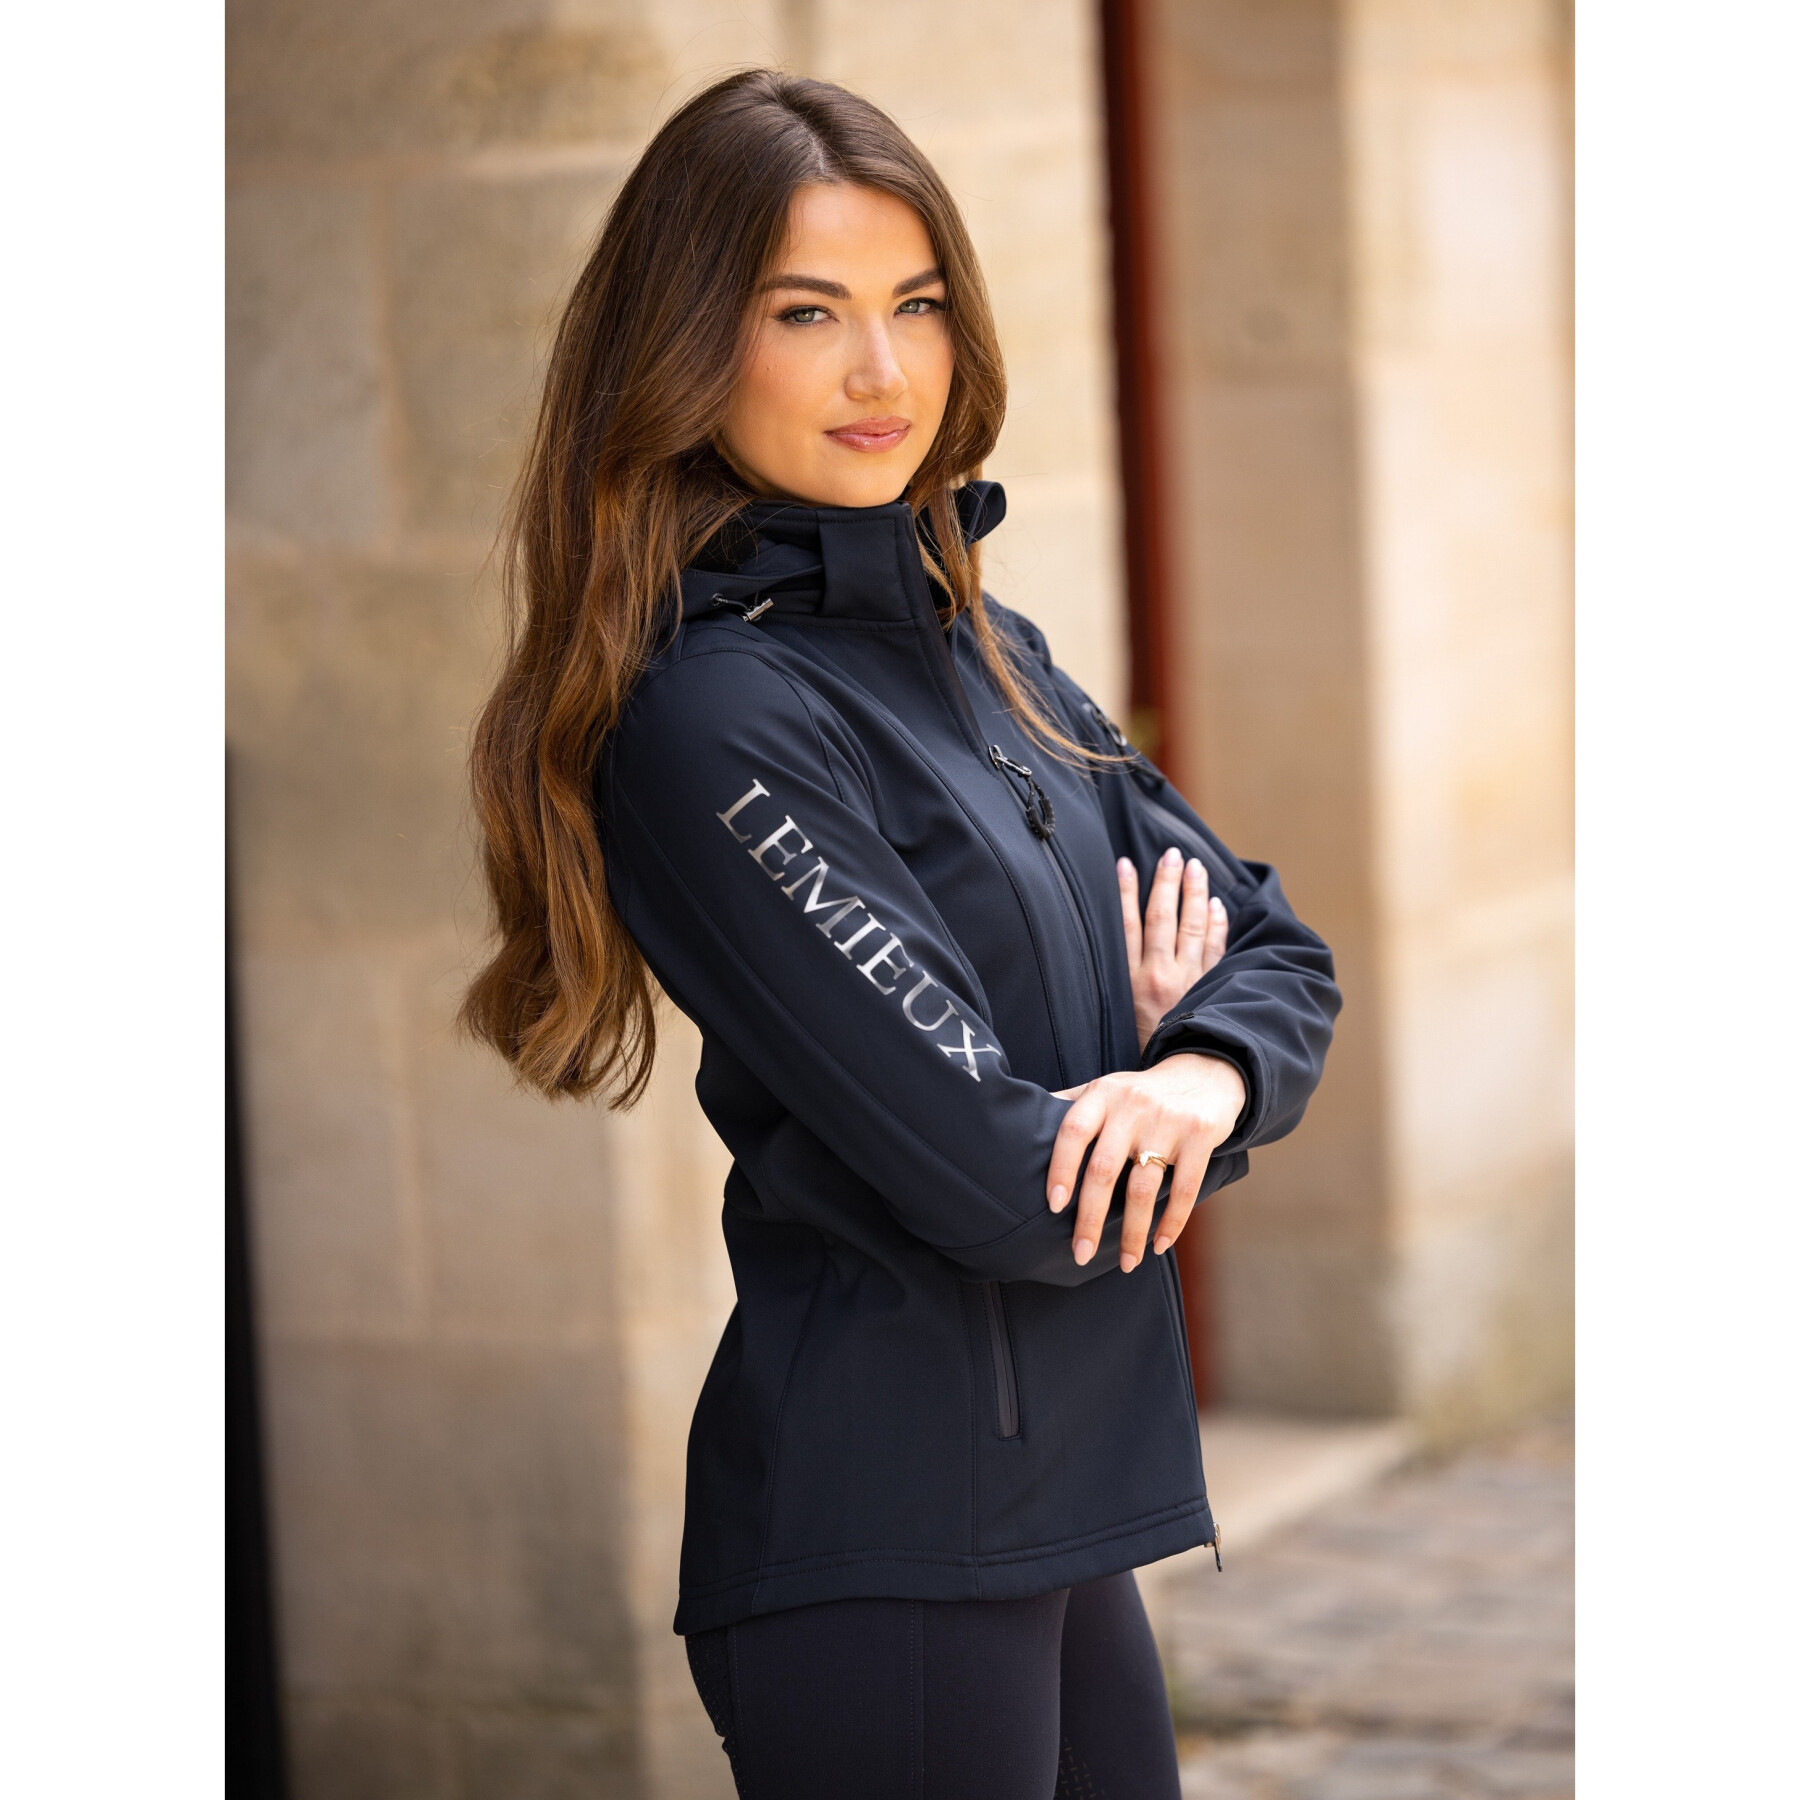 Women's full-zip riding jacket LeMieux Celine Softshell